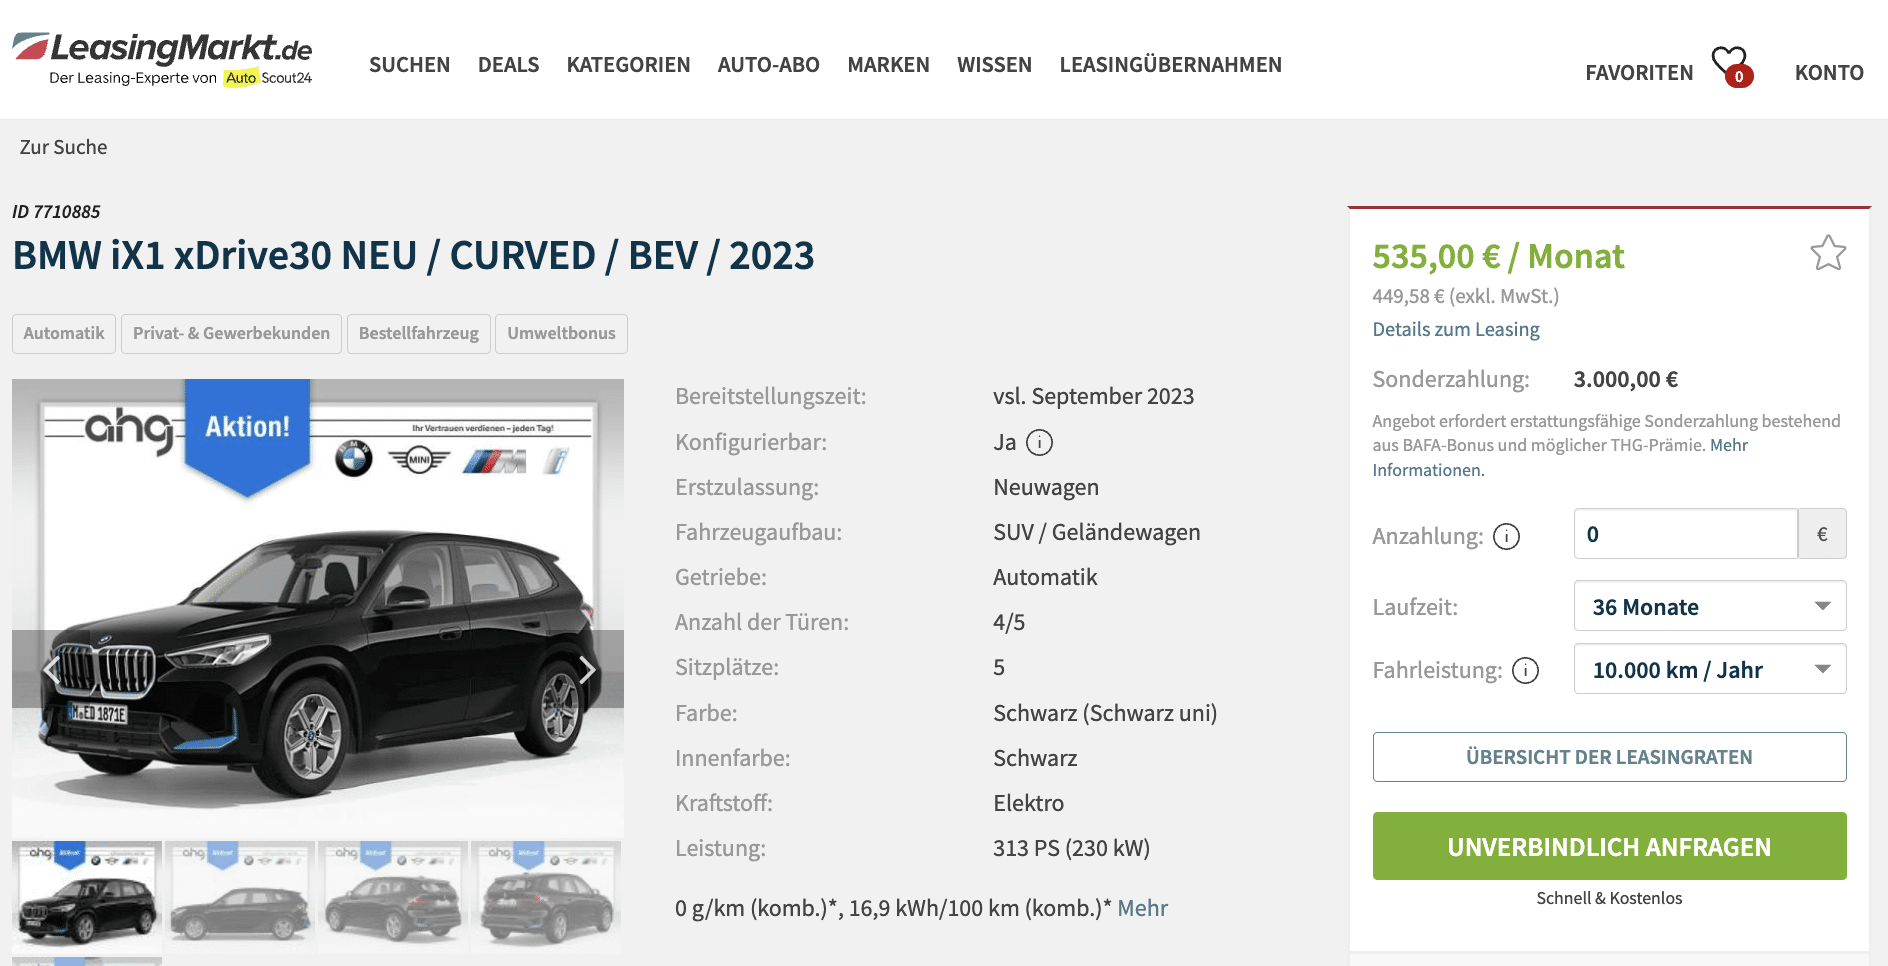 Der neue BMW Der neue iX1 elektro xDrive30: Angebote, Aktionen